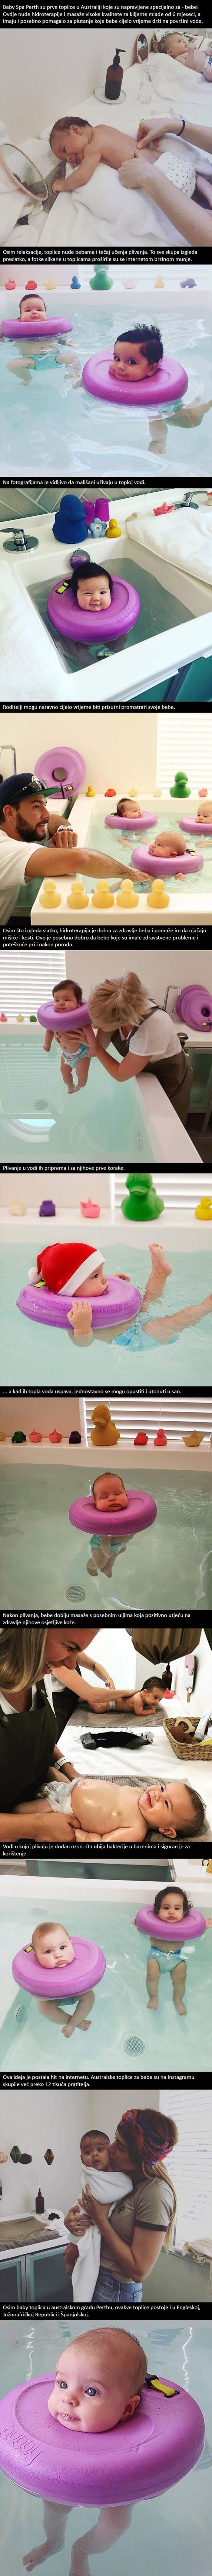 Nedavno su otvorene specijalne toplice za bebe, fotke mališana su postale hit na internetu!